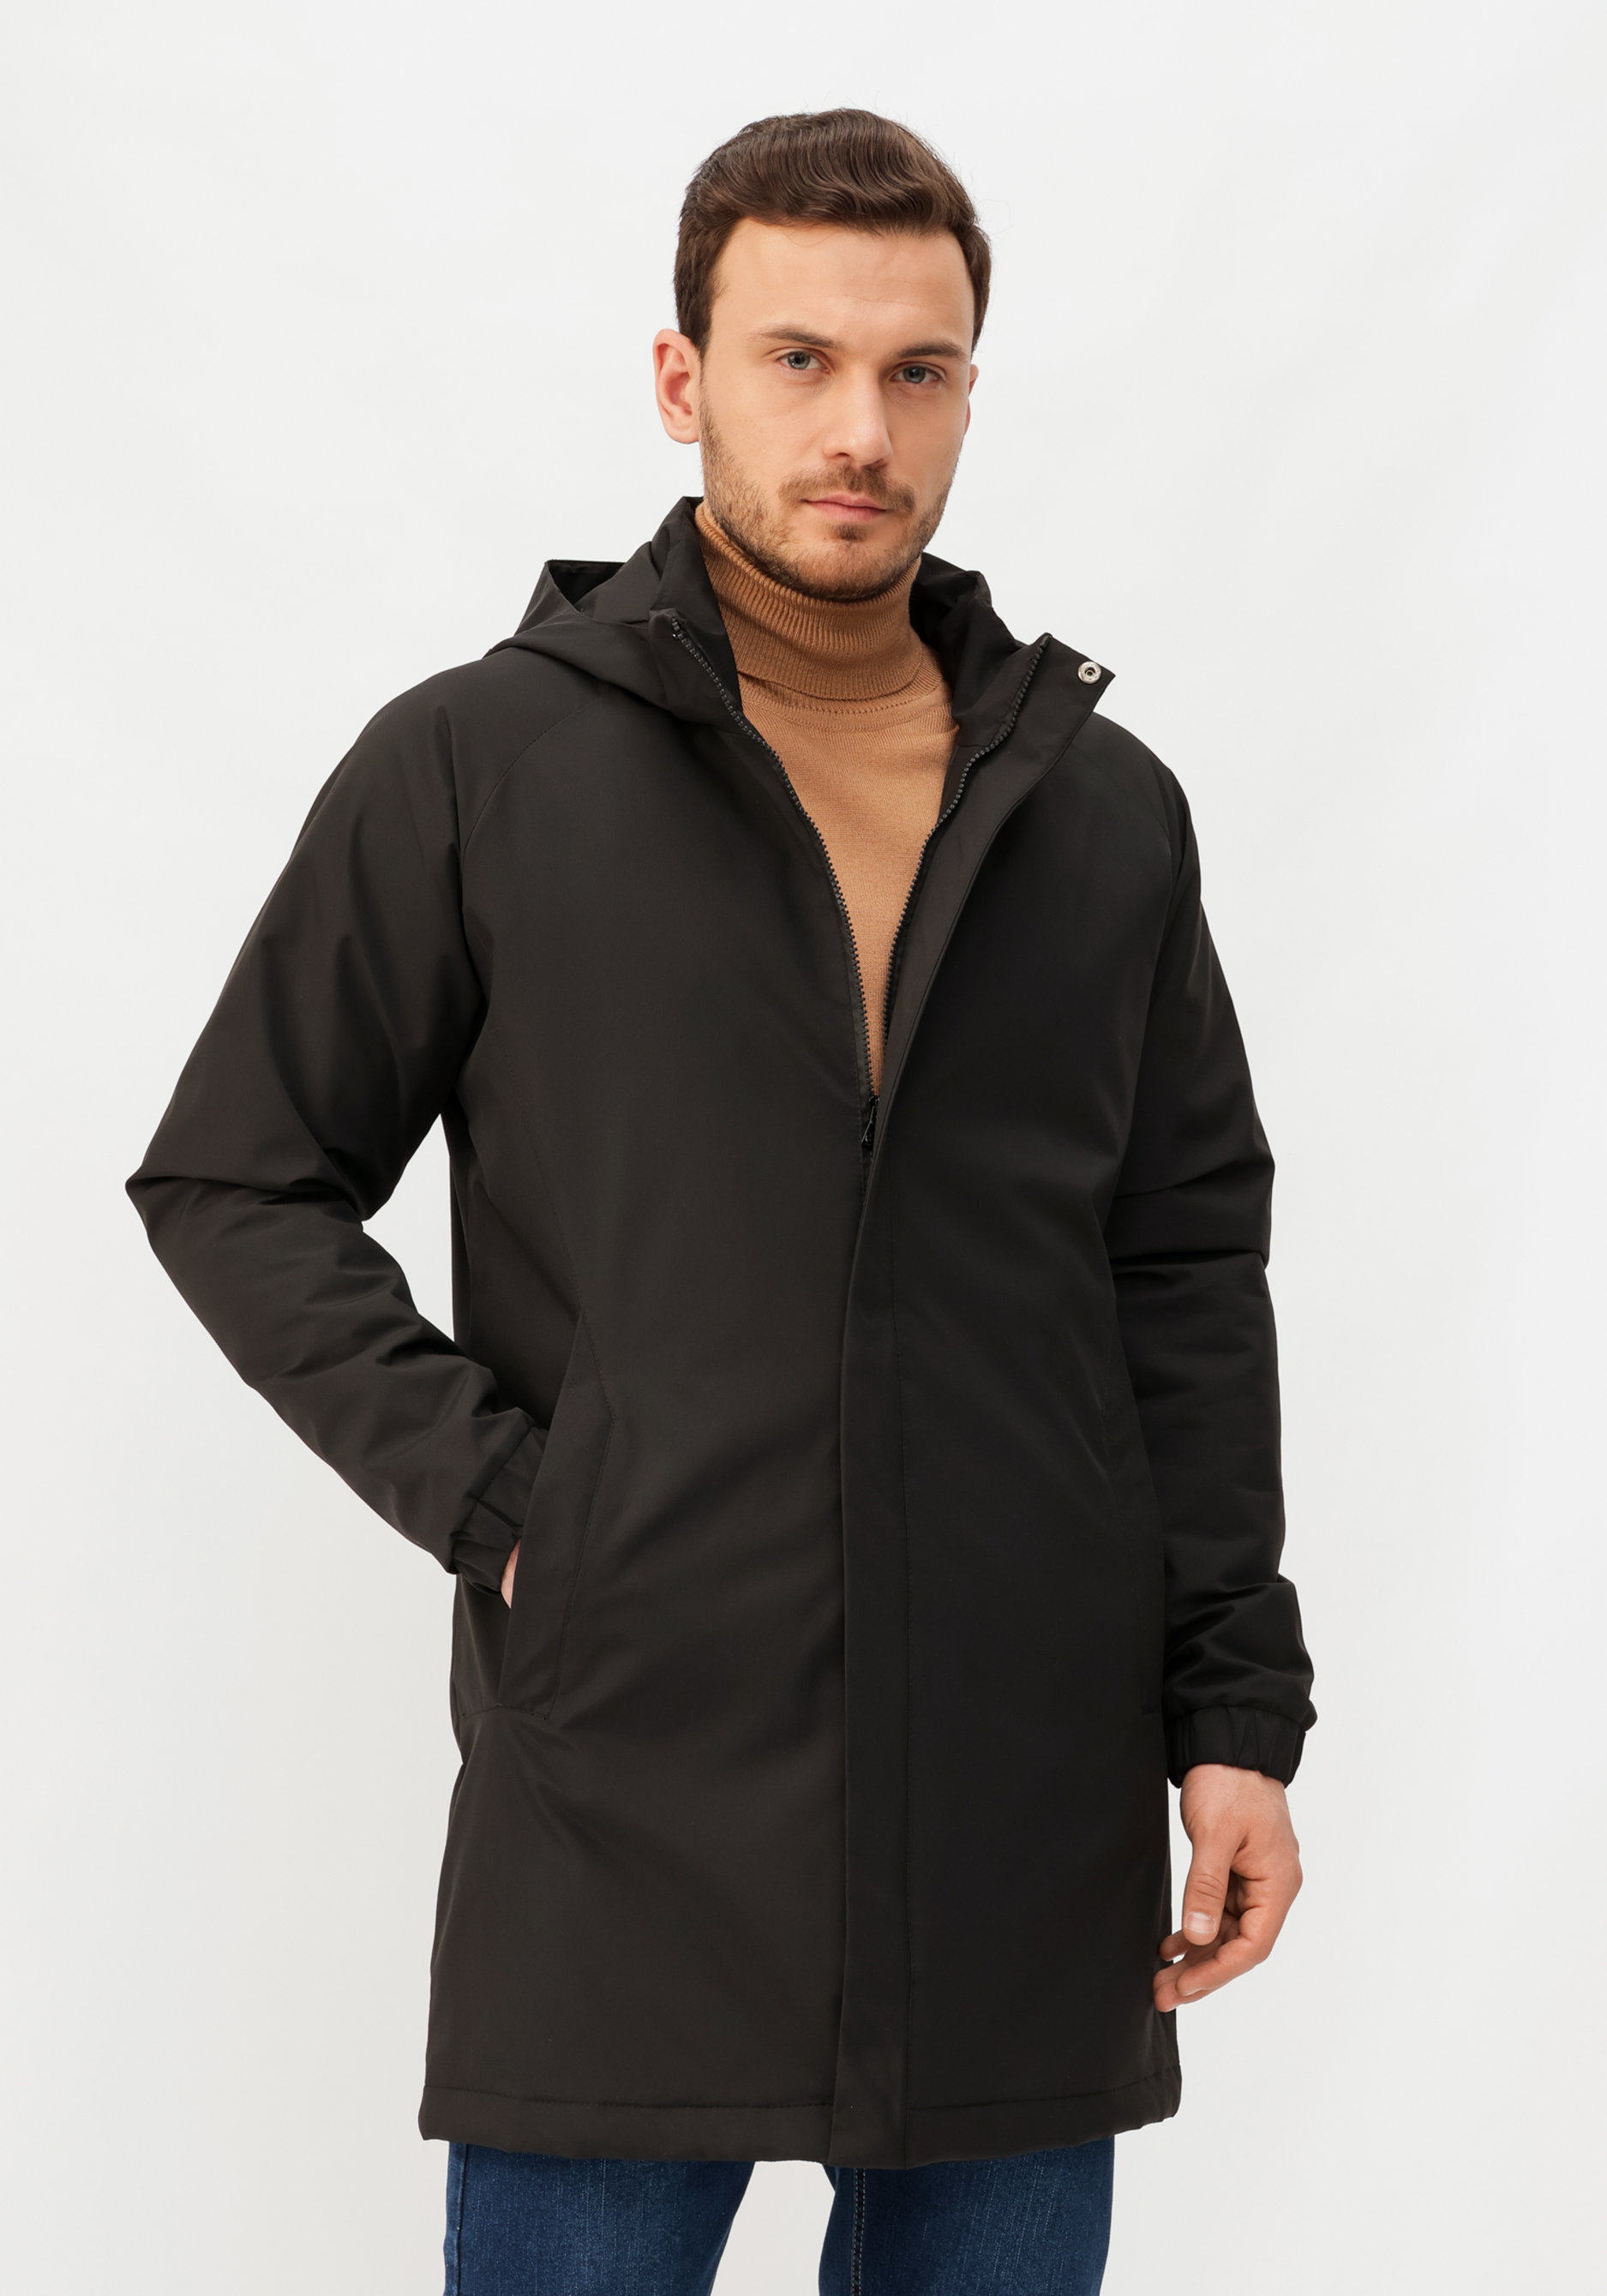 Куртка мужская демисезонная куртка ветровка для животных светоотражающая xs дс 18 20 ош 22 24 ог 29 30 см оранжевая 73319